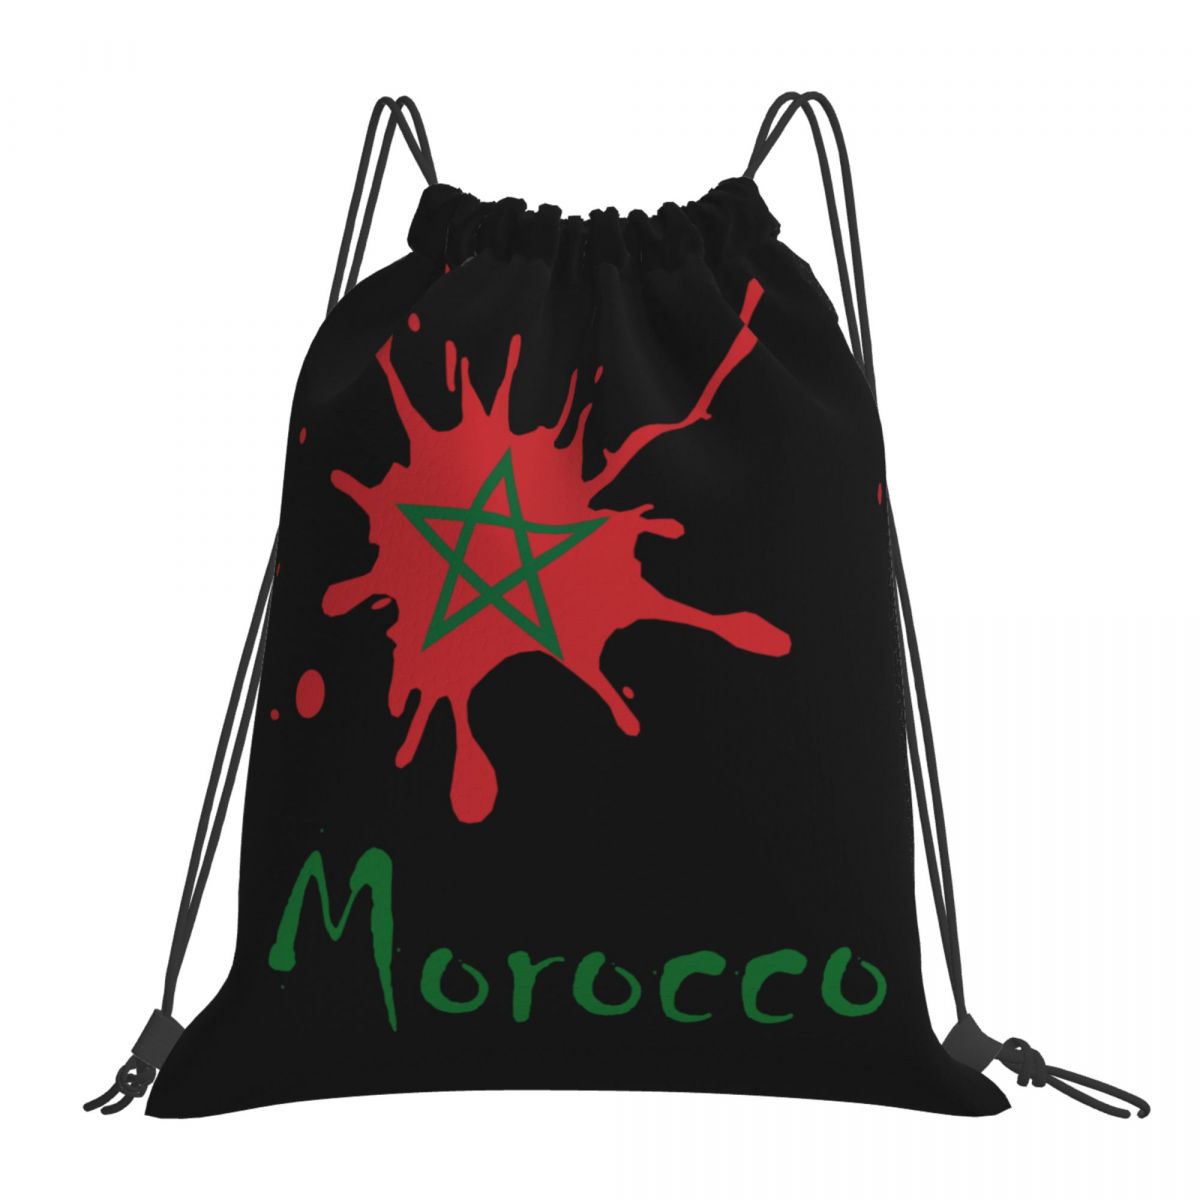 Morocco Ink Spatter Unisex Drawstring Backpack Bag Travel Sackpack